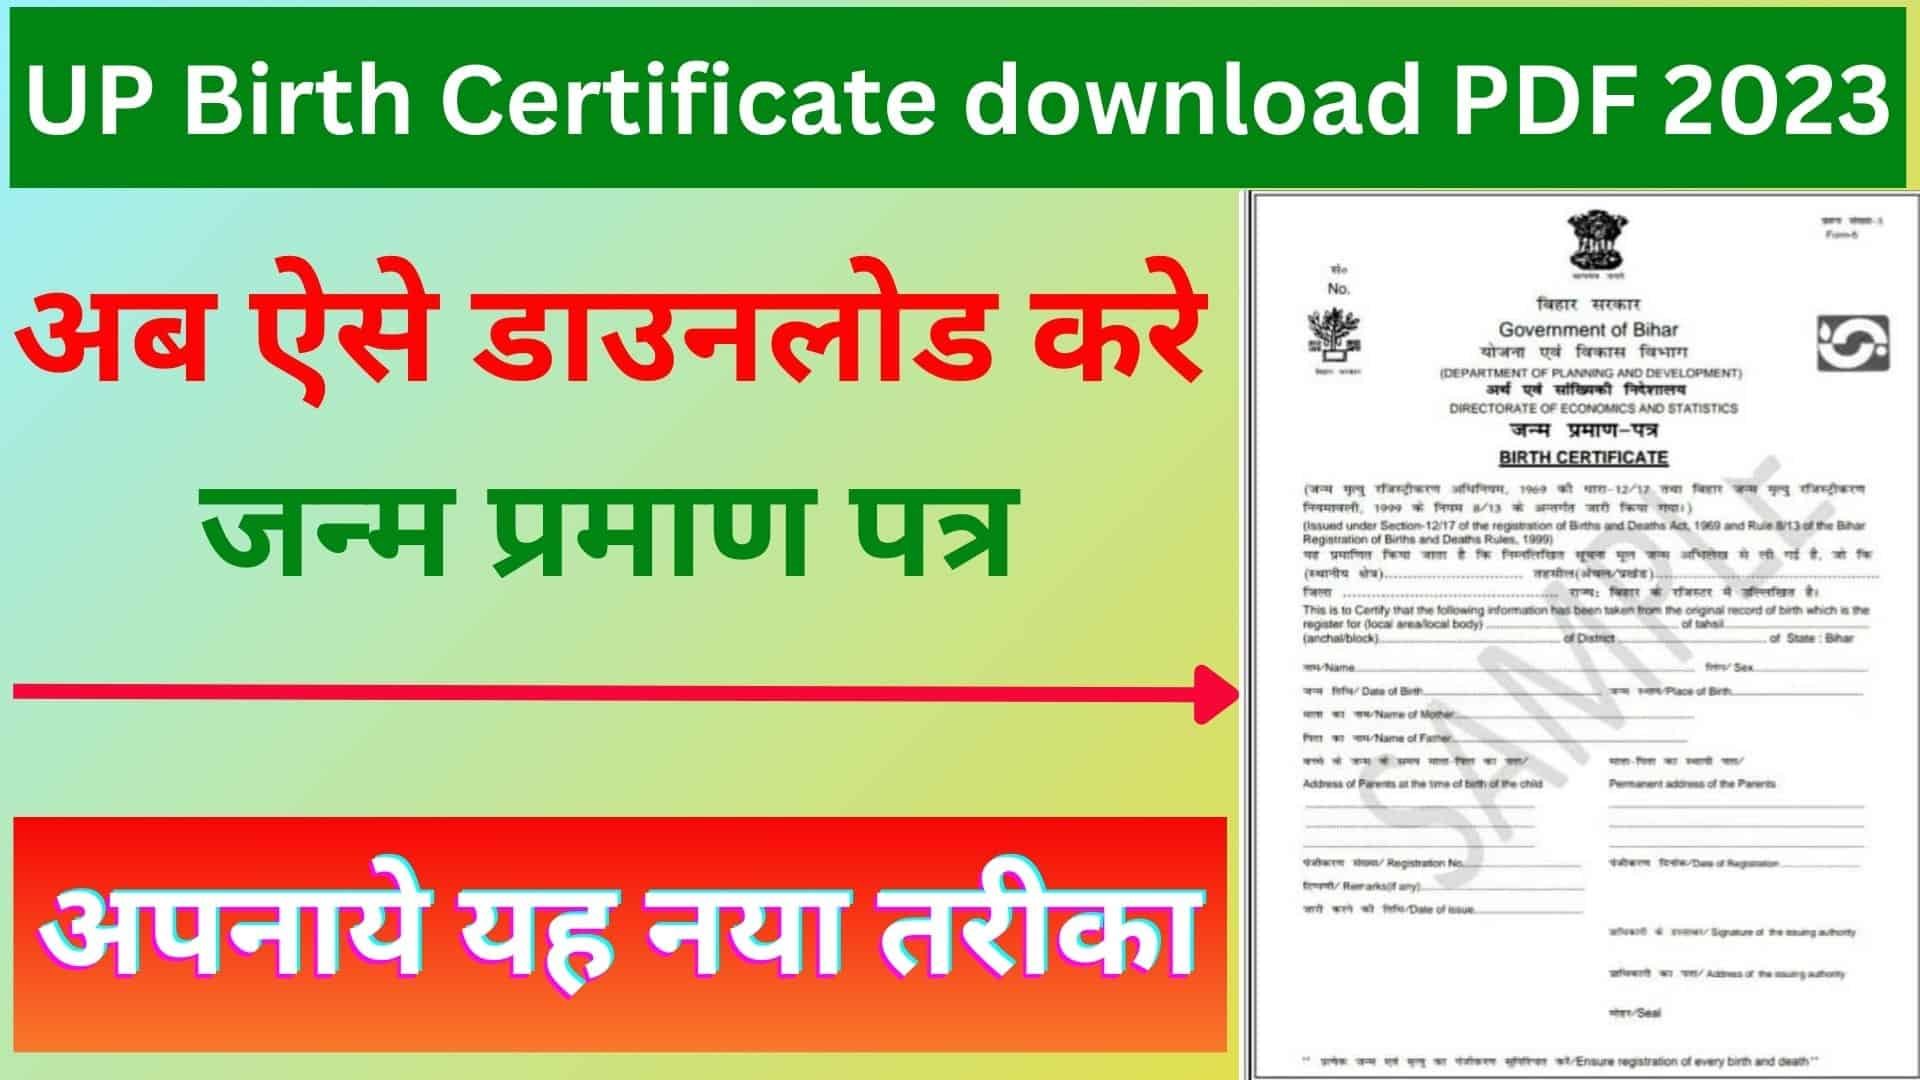 UP Birth Certificate download PDF 2023 : अब ऐसे डाउनलोड करे जन्म प्रमाण पत्र अपनाये यह नया तरीका